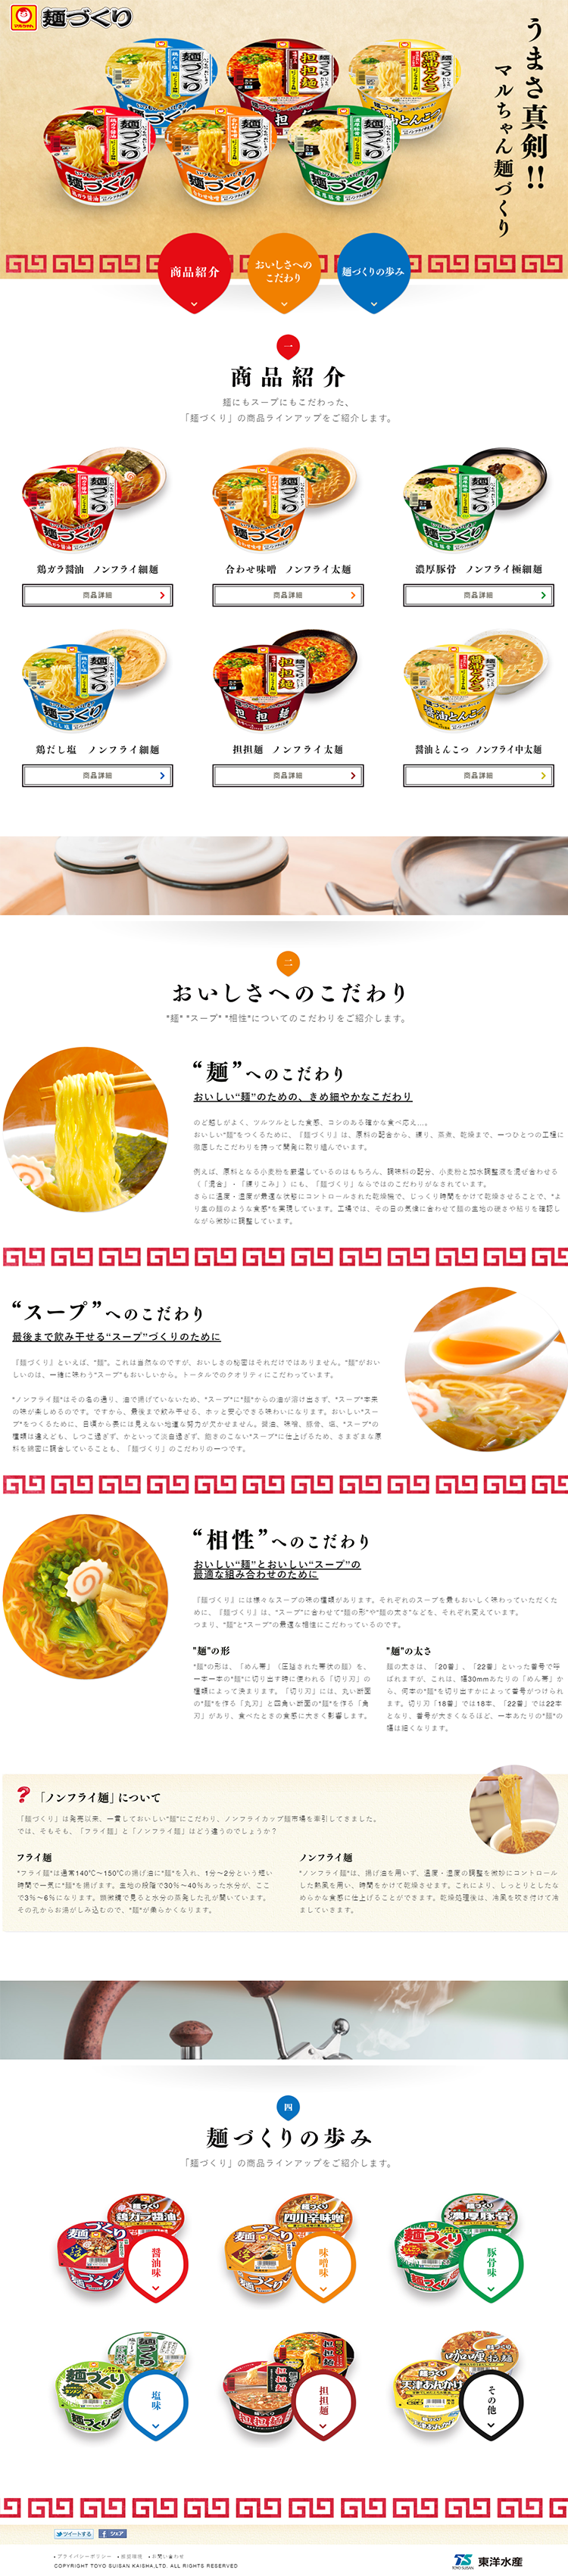 マルちゃん麺づくり_pc_1